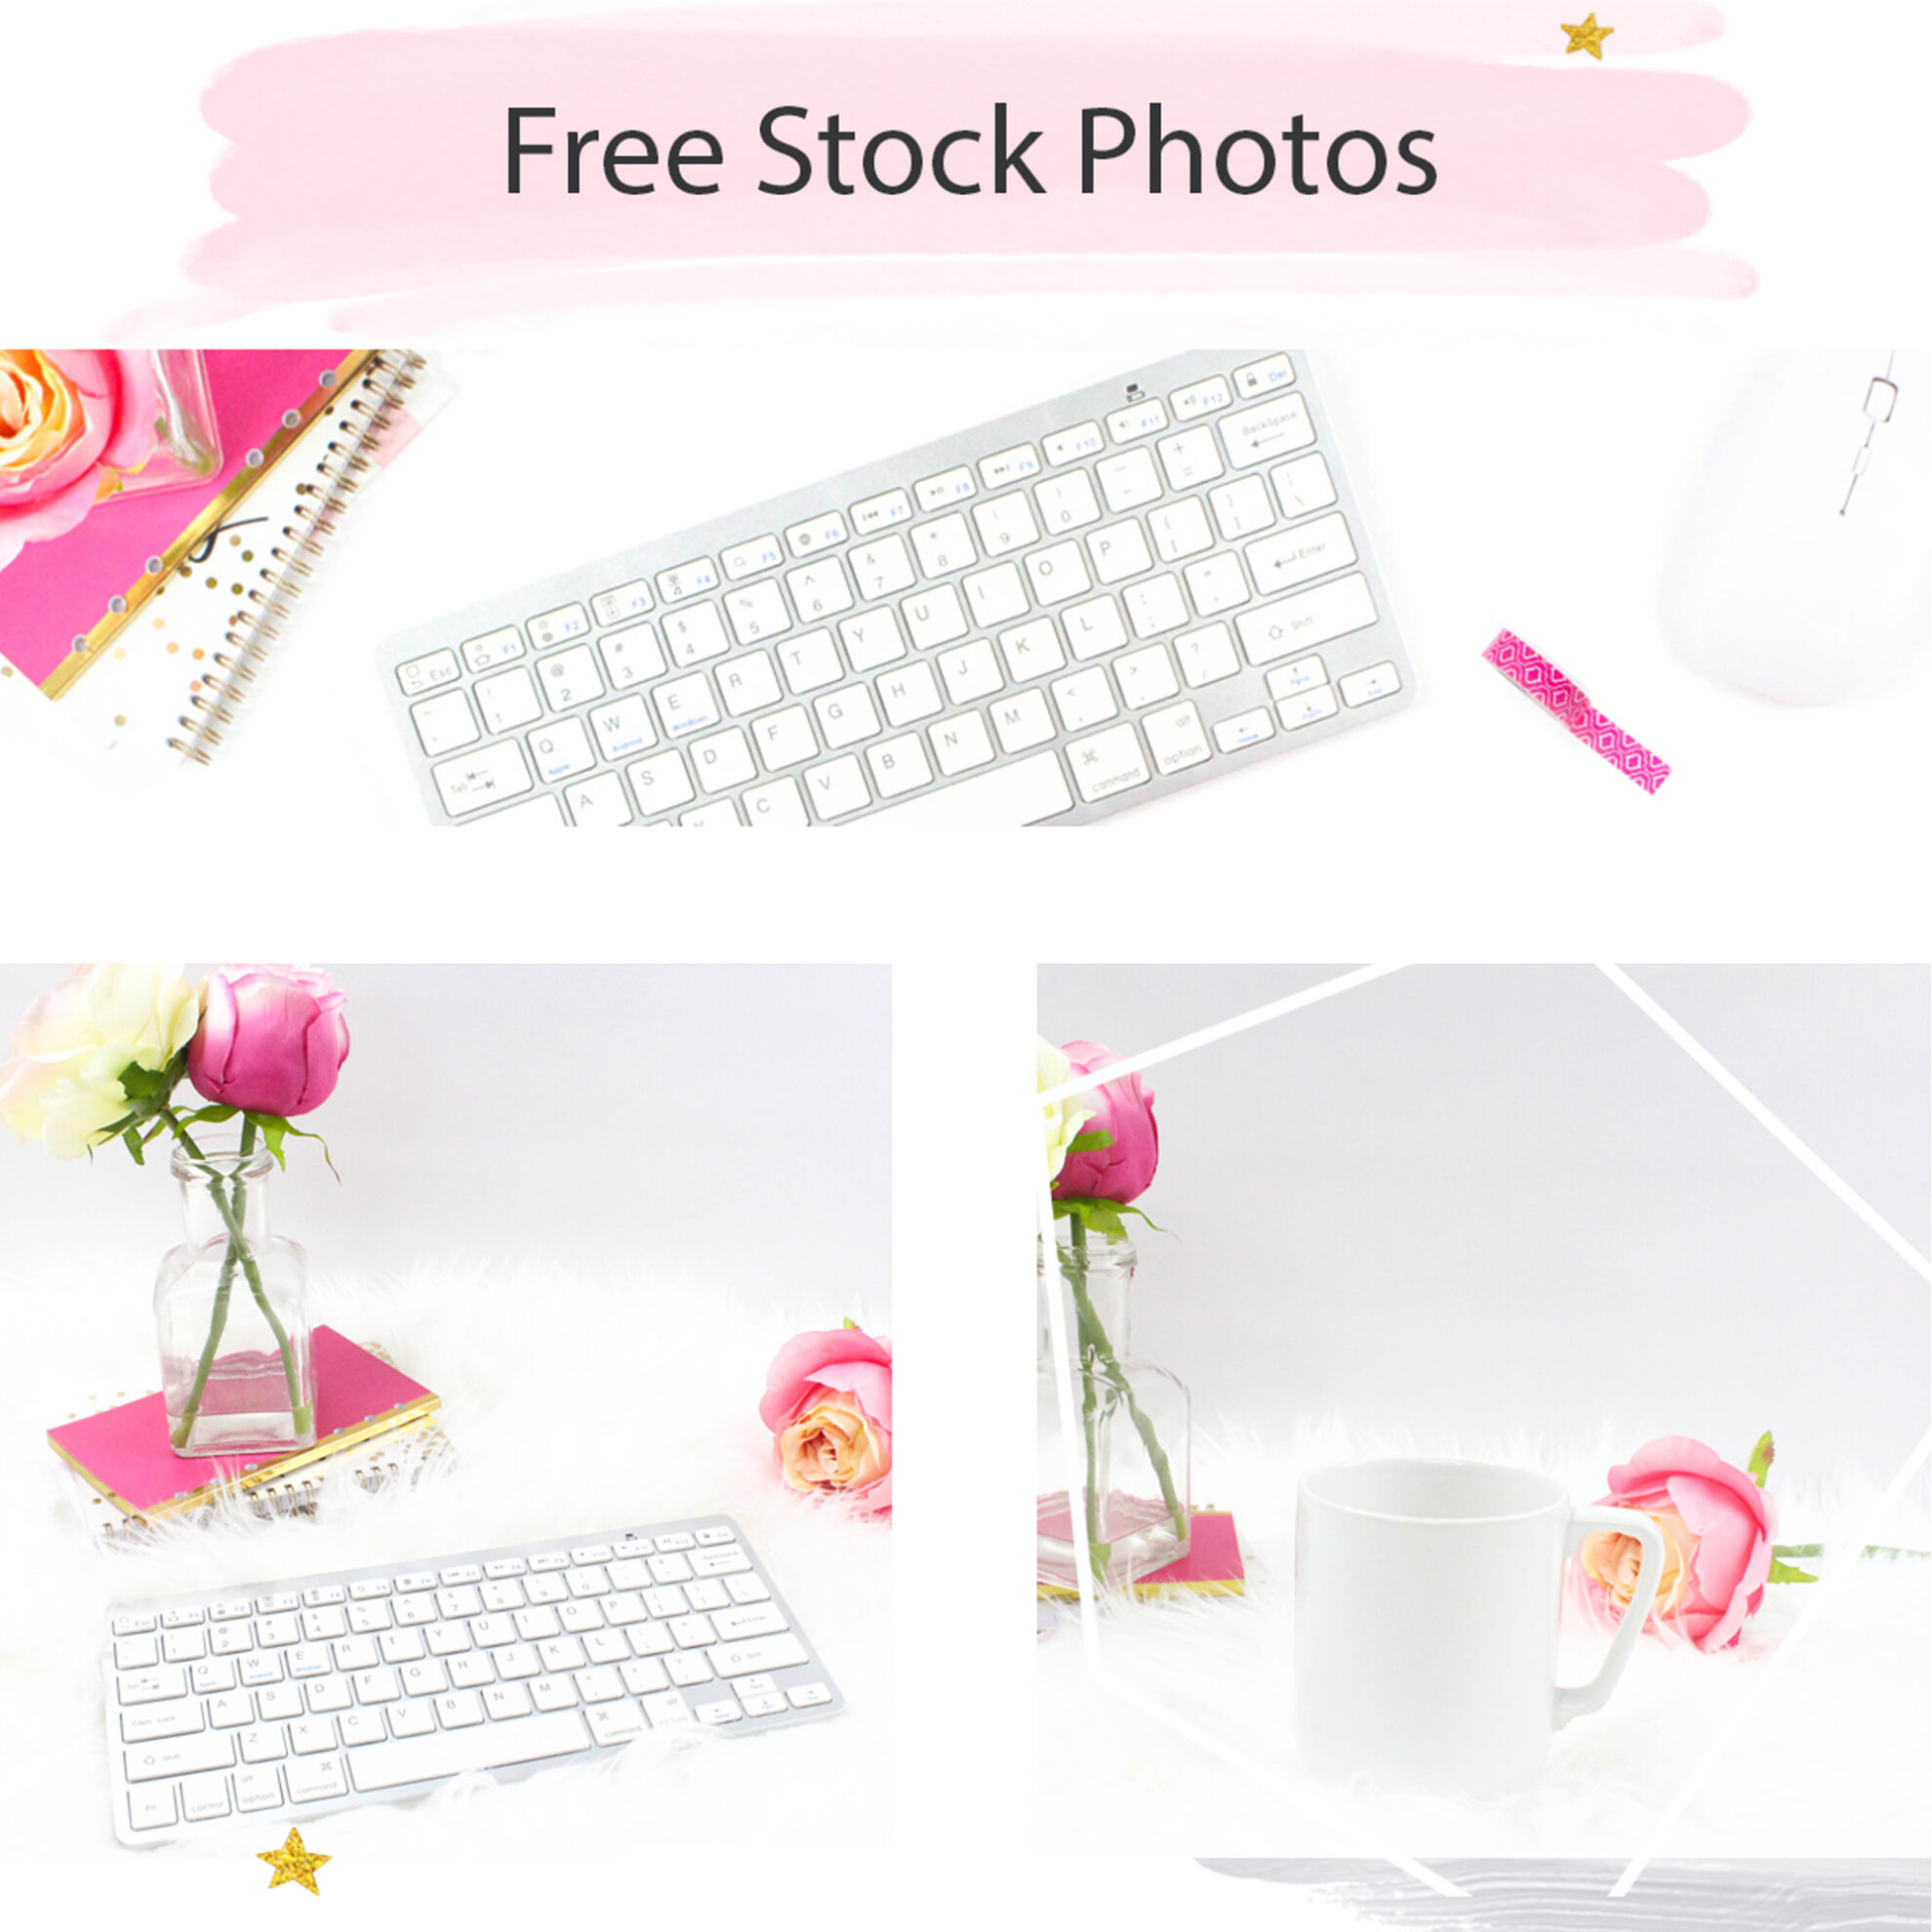 Beautiful free stock photos